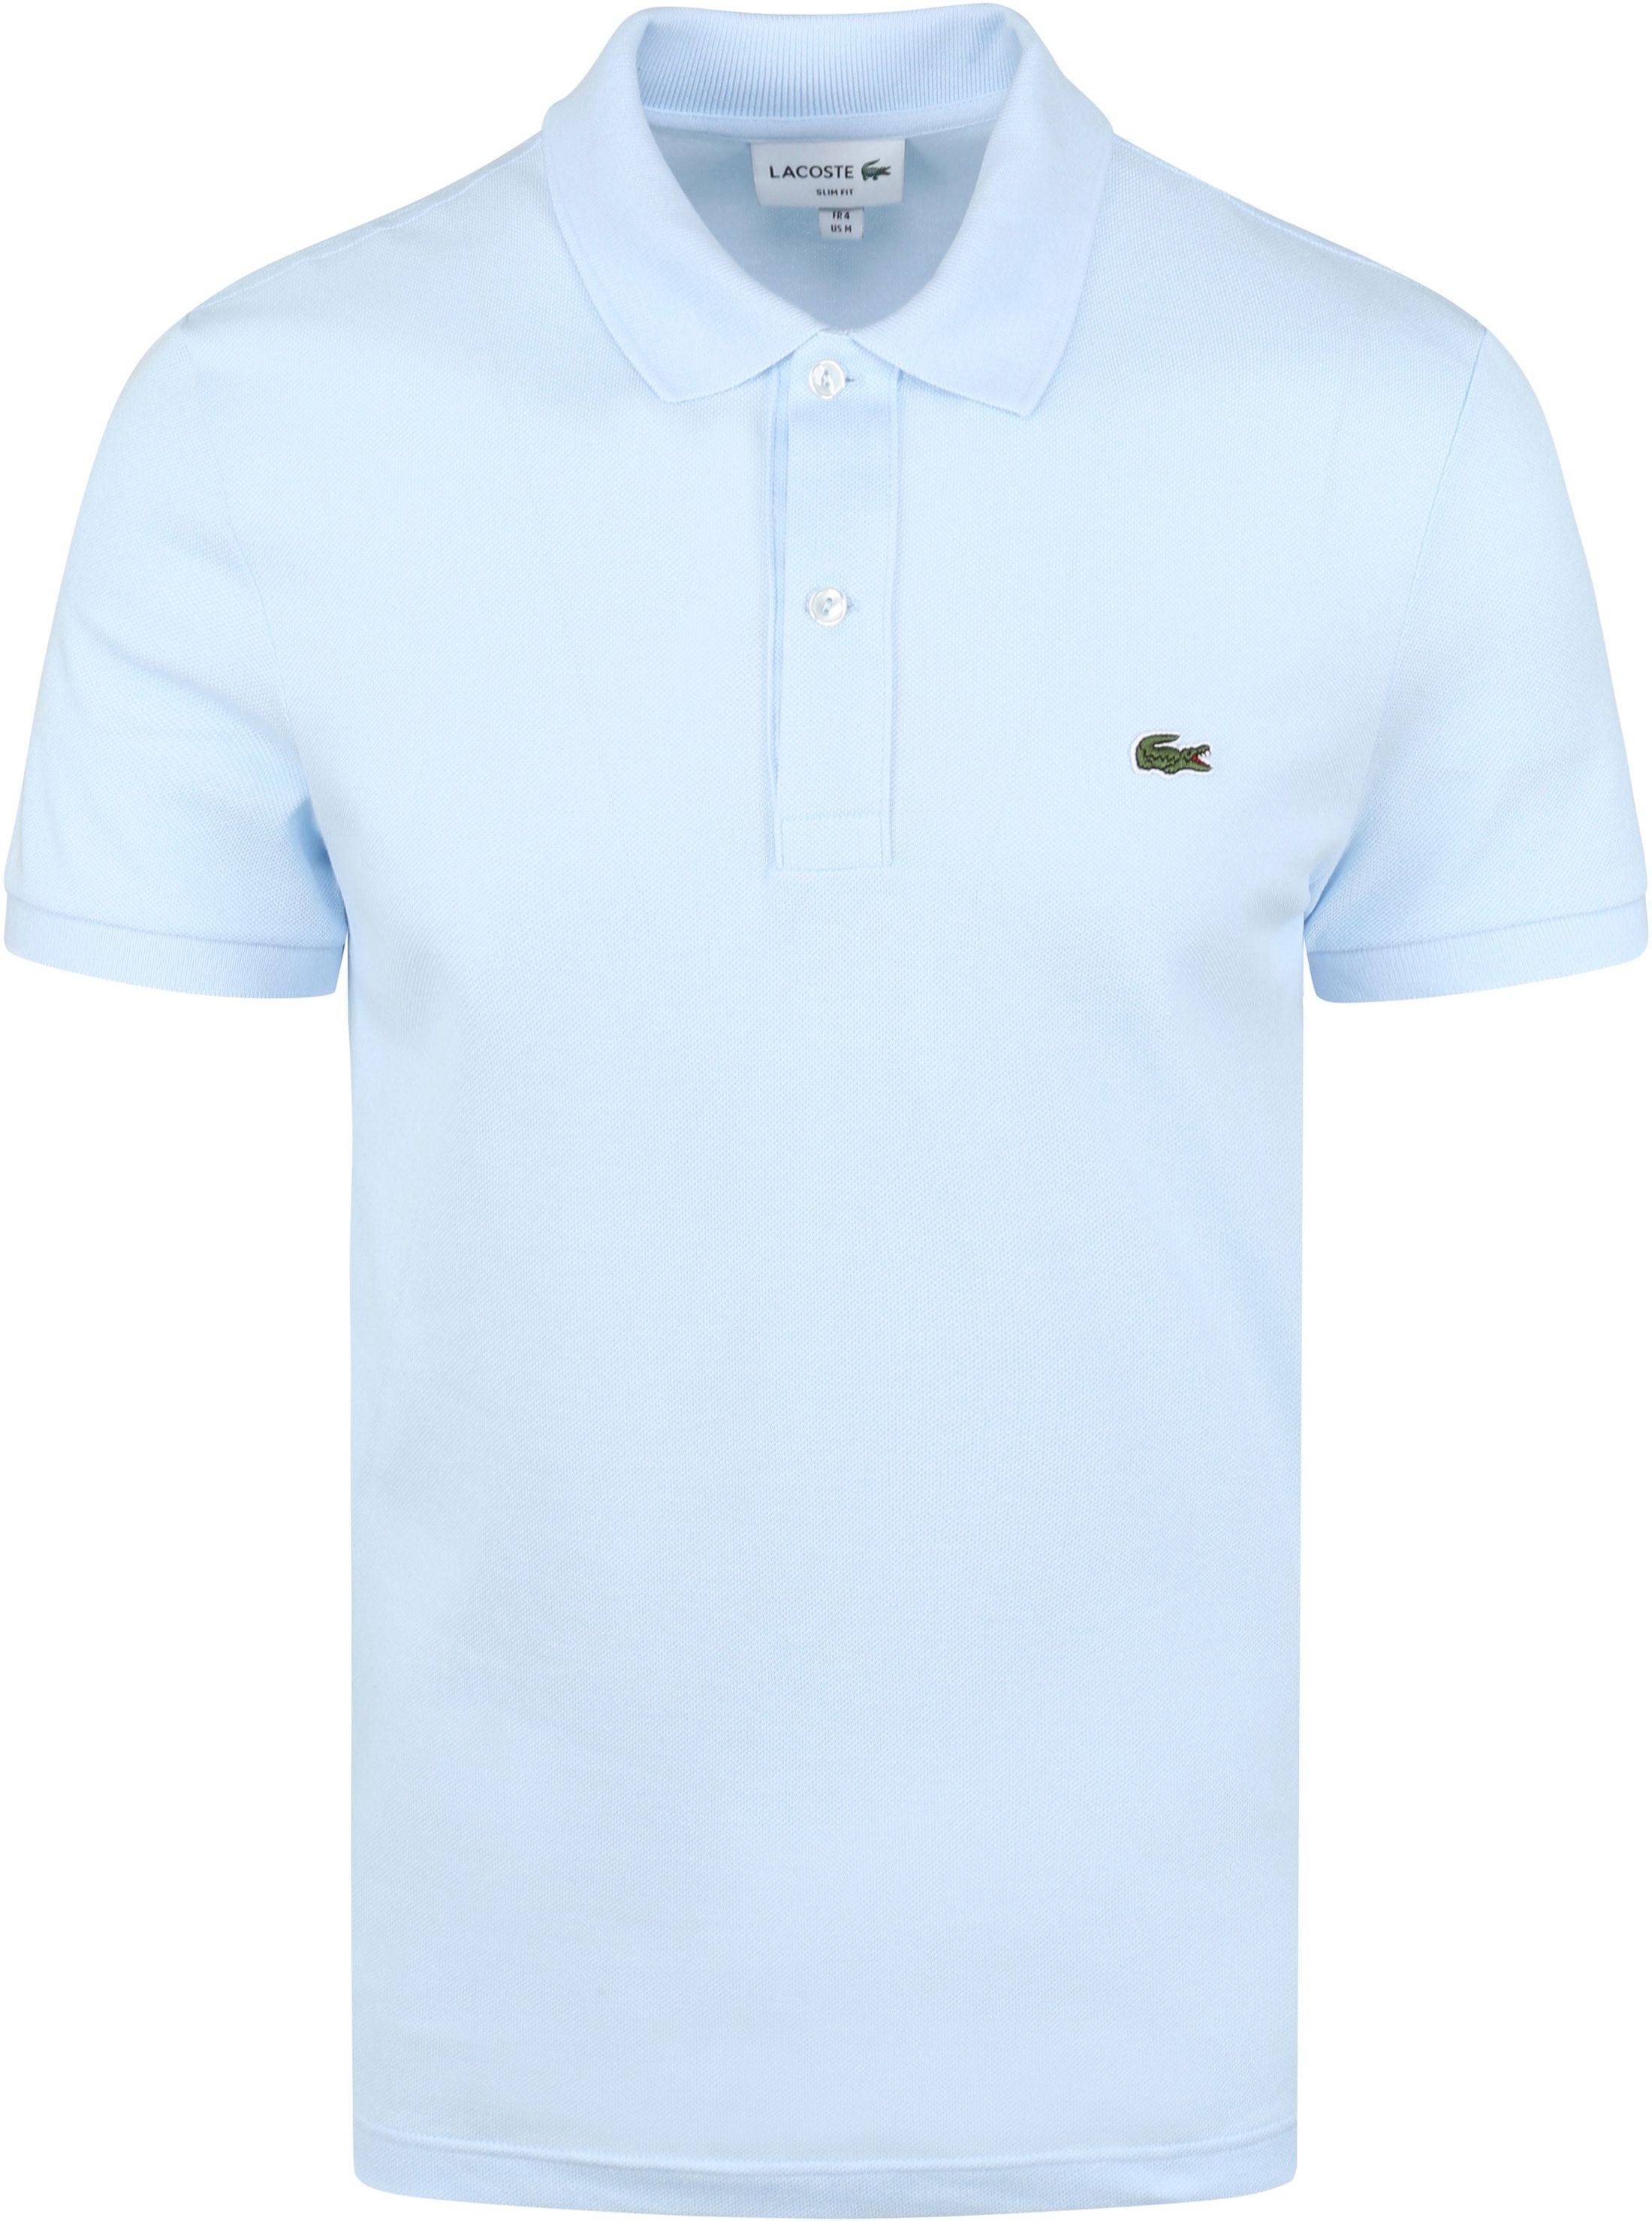 Lacoste Polo Shirt Light Blue size L